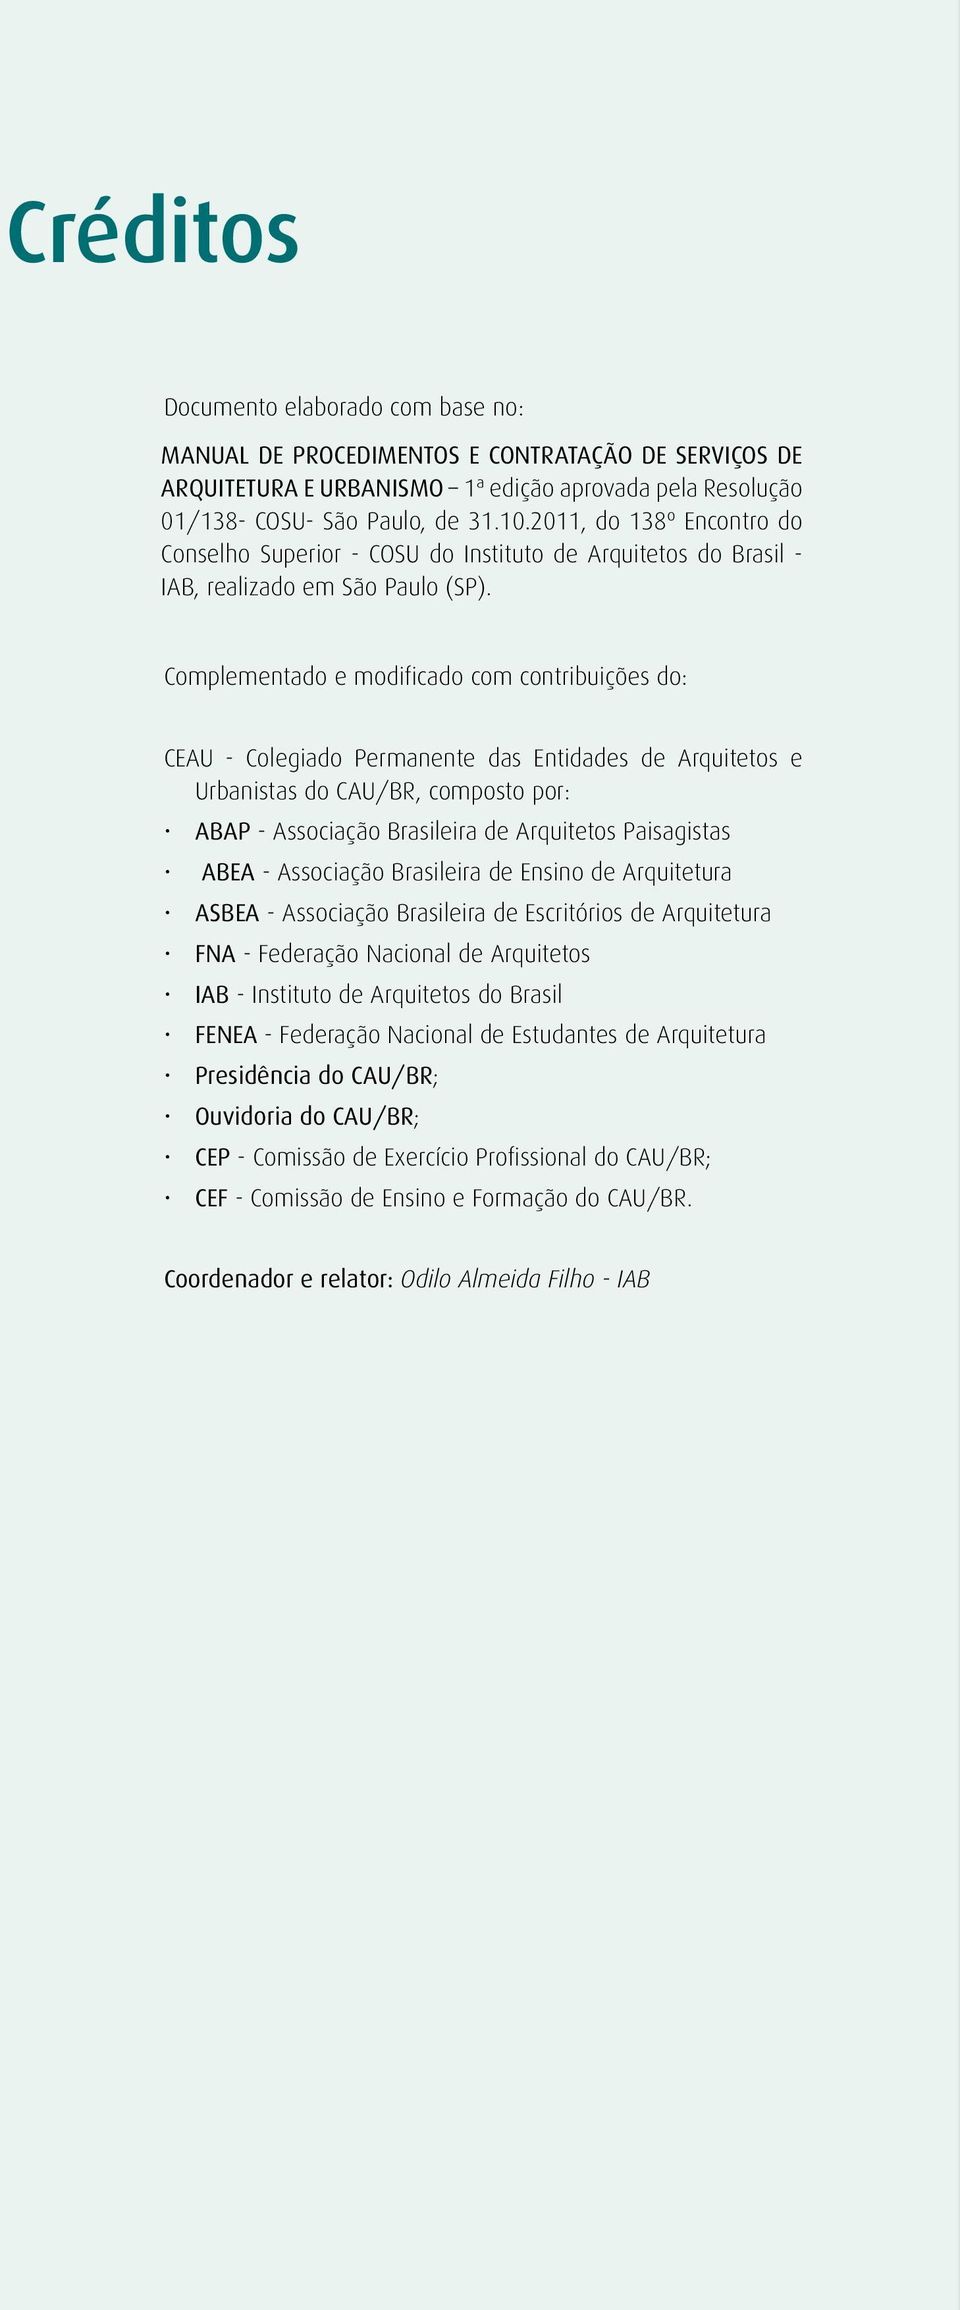 Complementado e modificado com contribuições do: CEAU - Colegiado Permanente das Entidades de Arquitetos e Urbanistas do CAU/BR, composto por: ABAP - Associação Brasileira de Arquitetos Paisagistas